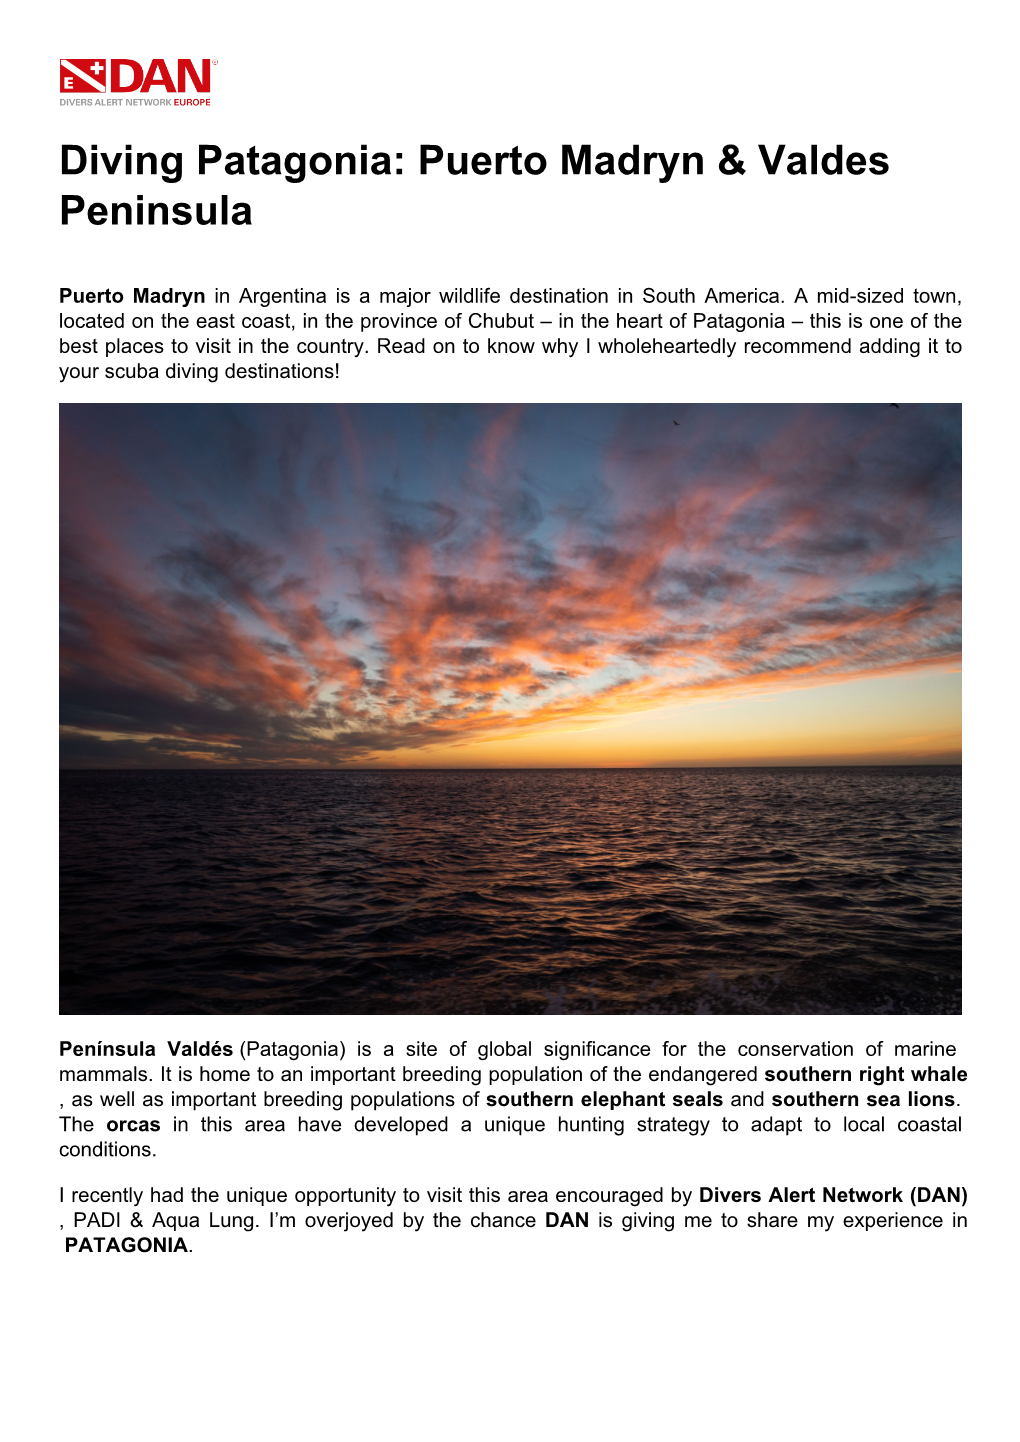 Diving Patagonia: Puerto Madryn & Valdes Peninsula